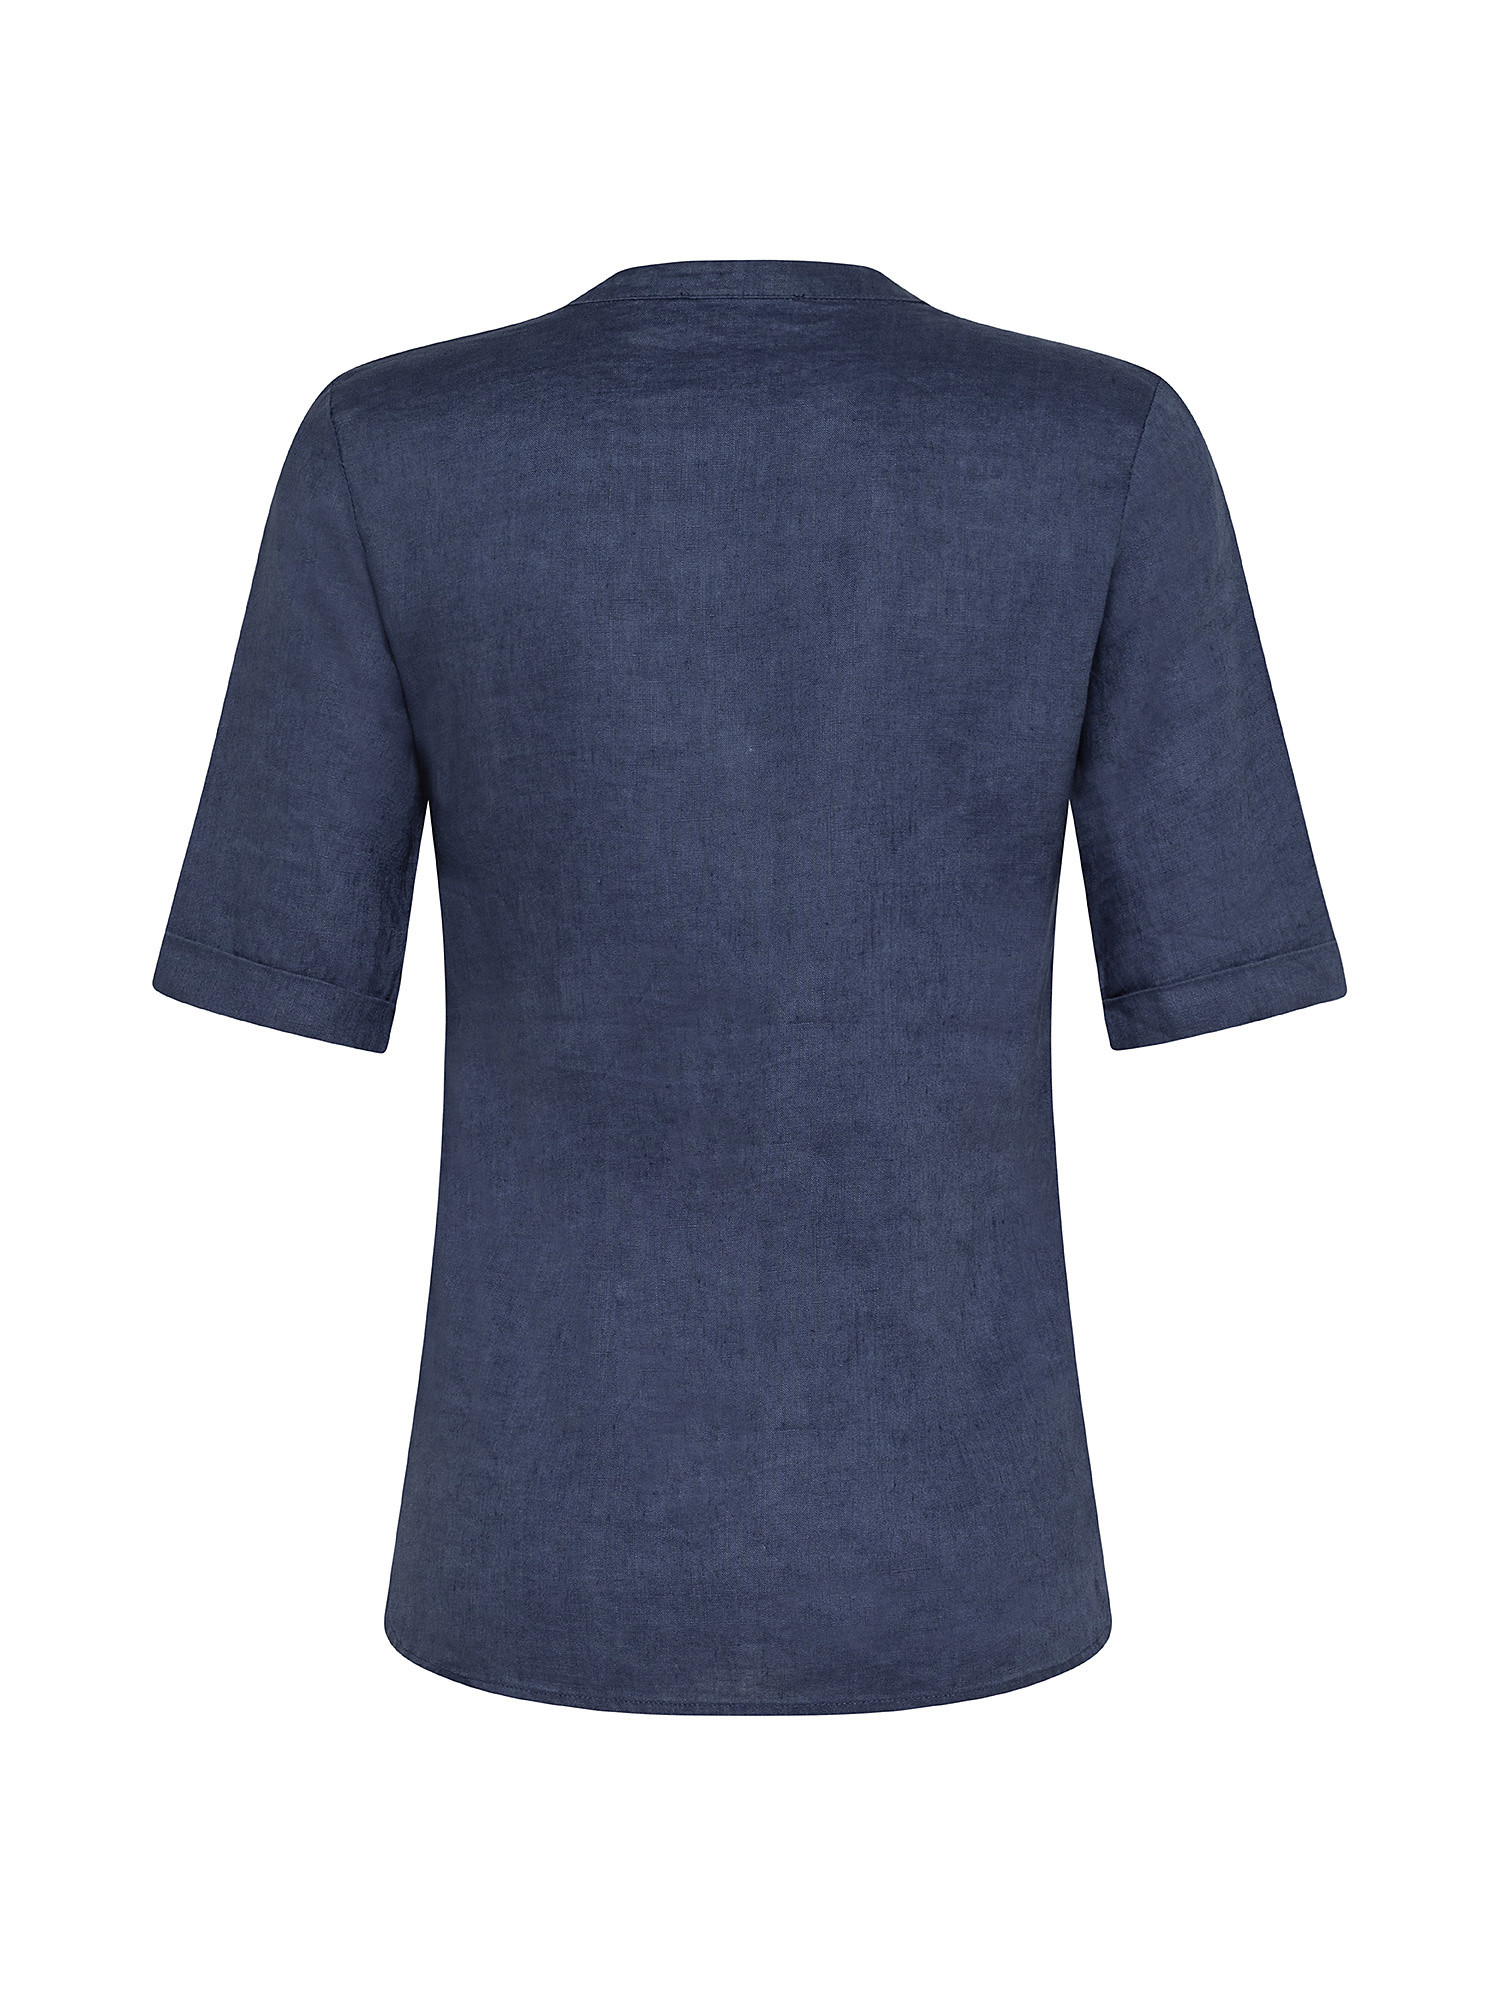 Camicia puro lino con pieghine, Blu, large image number 1